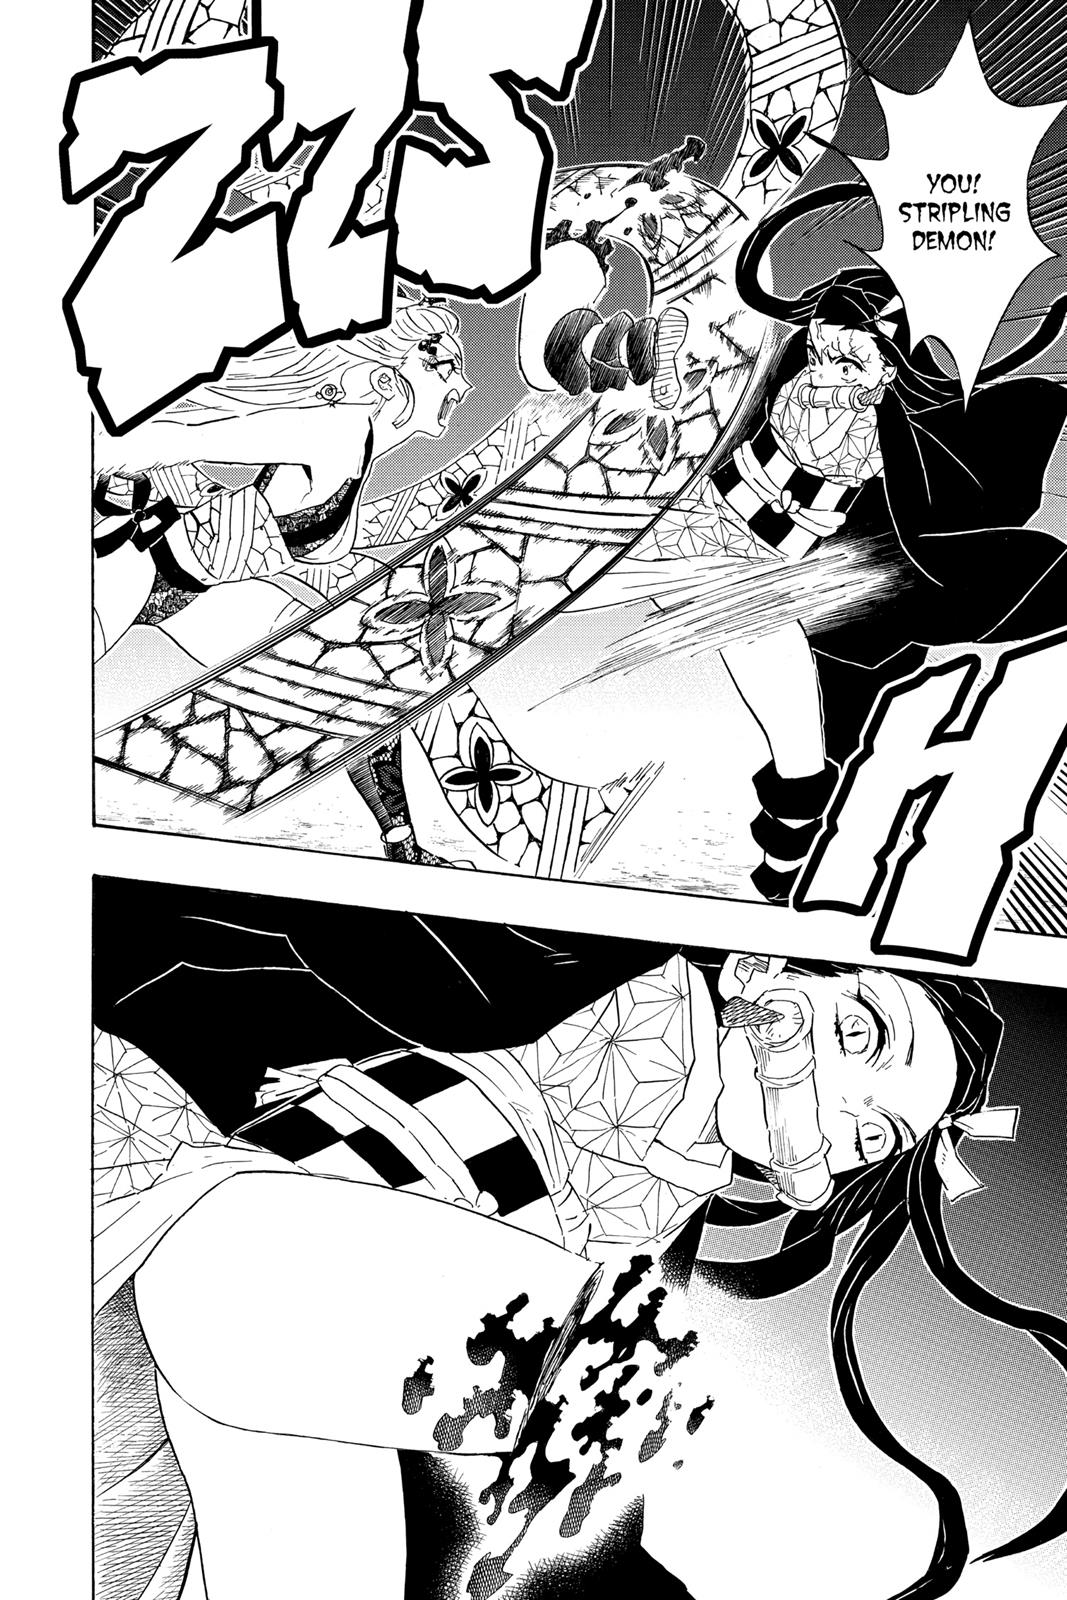 Demon Slayer Manga Manga Chapter - 83 - image 1